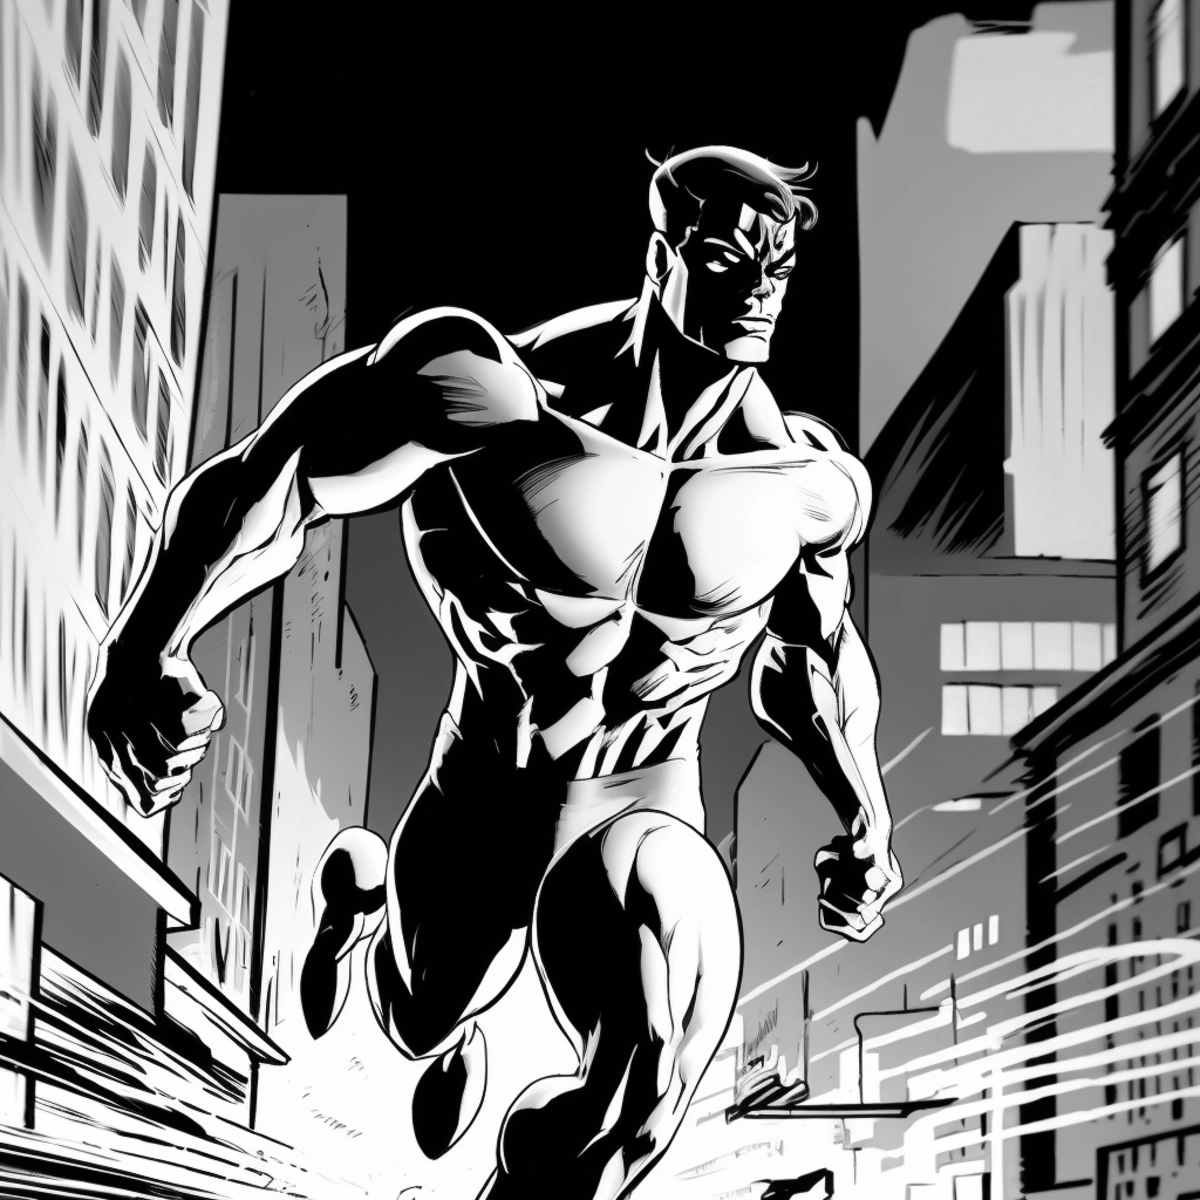 Un'illustrazione dinamica in stile fumetto di un supereroe che entra in azione, con un paesaggio urbano sullo sfondo